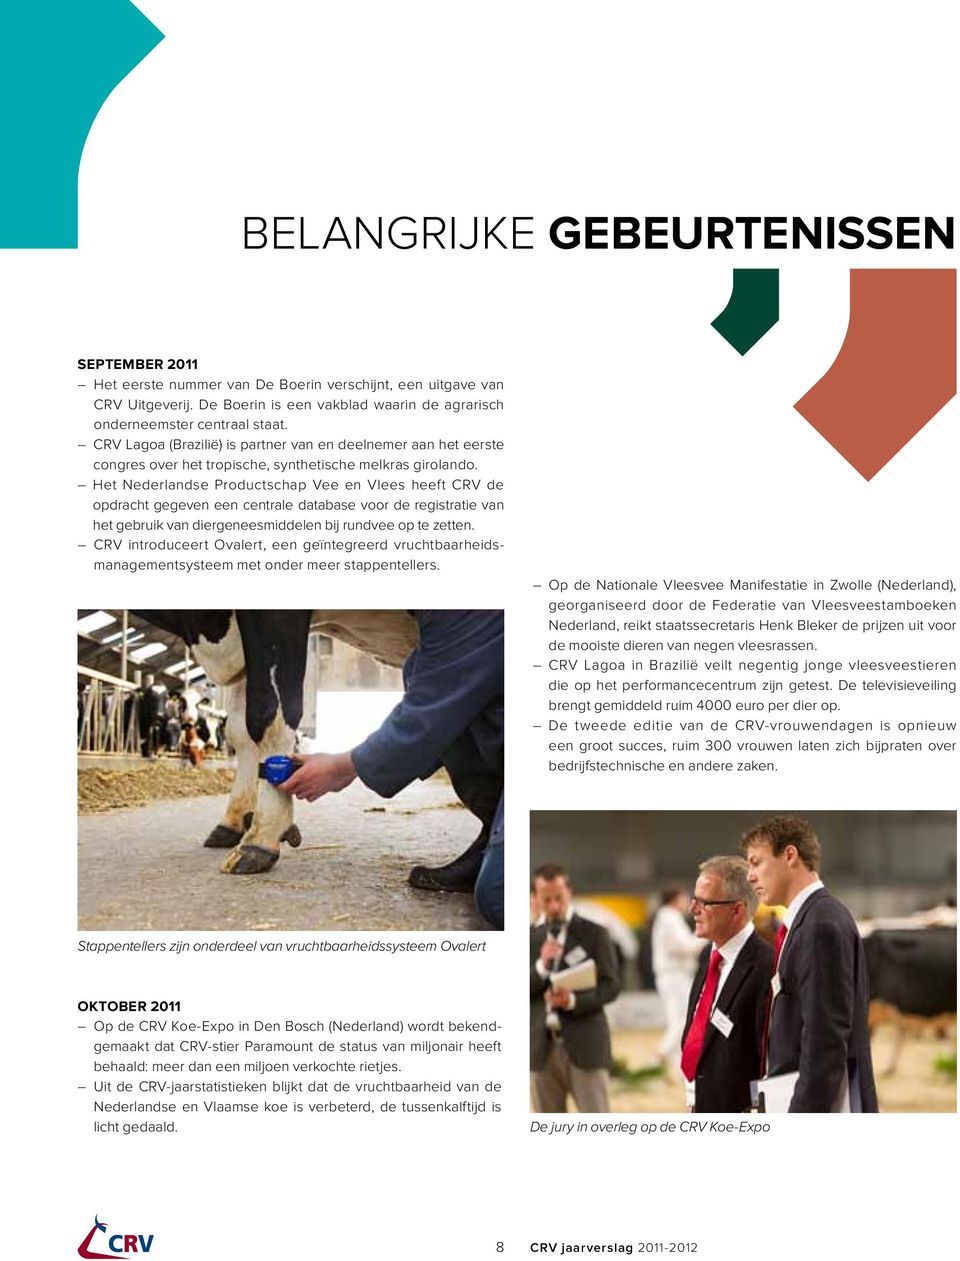 Het Nederlandse Productschap Vee en Vlees heeft CRV de opdracht gegeven een centrale database voor de registratie van het gebruik van diergenees middelen bij rundvee op te zetten.